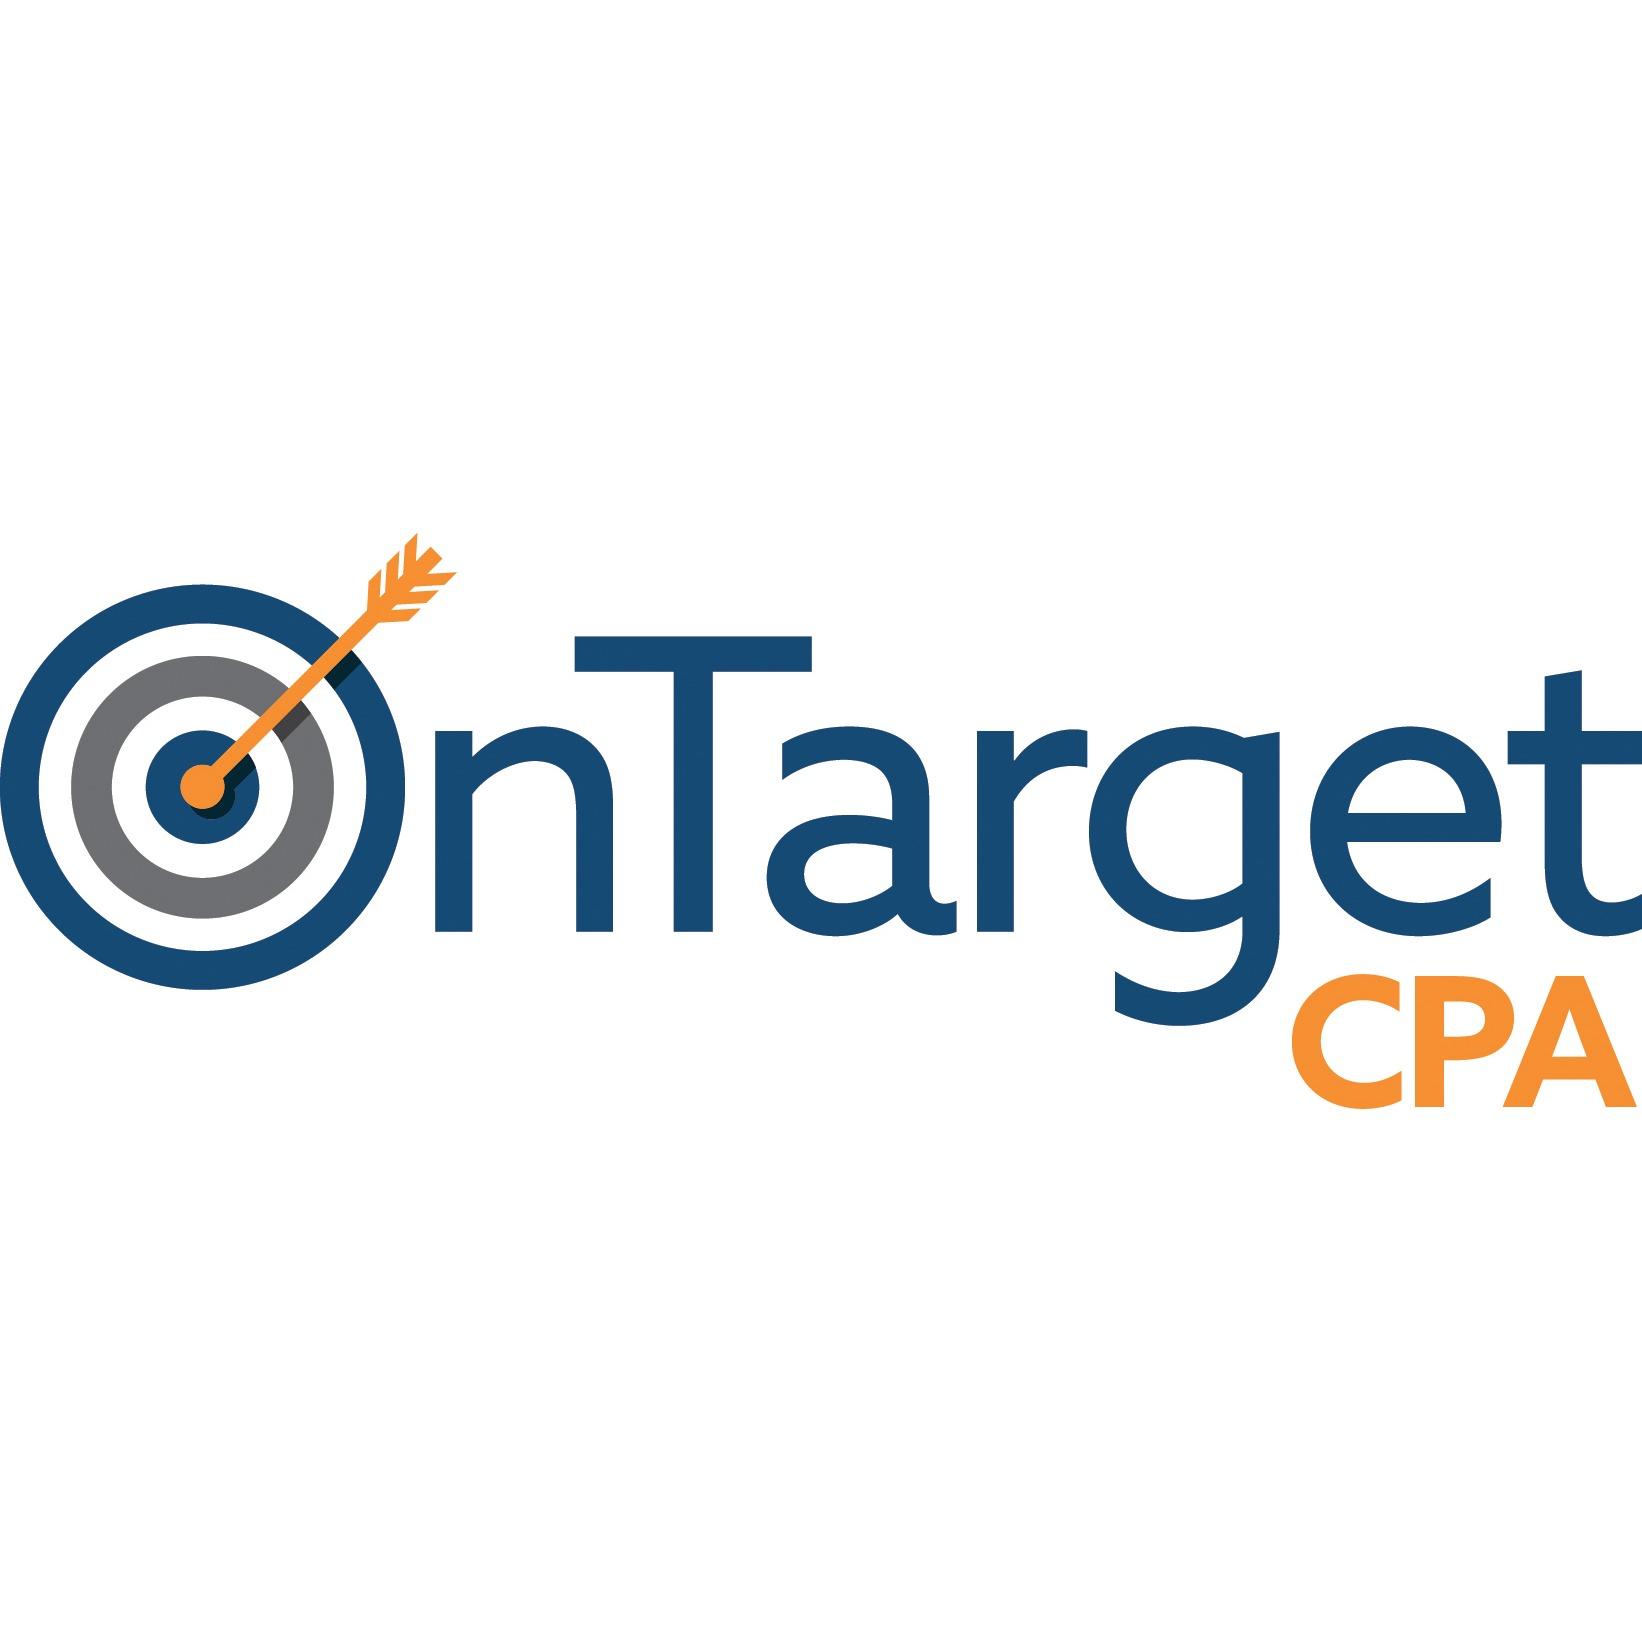 OnTarget CPA Logo